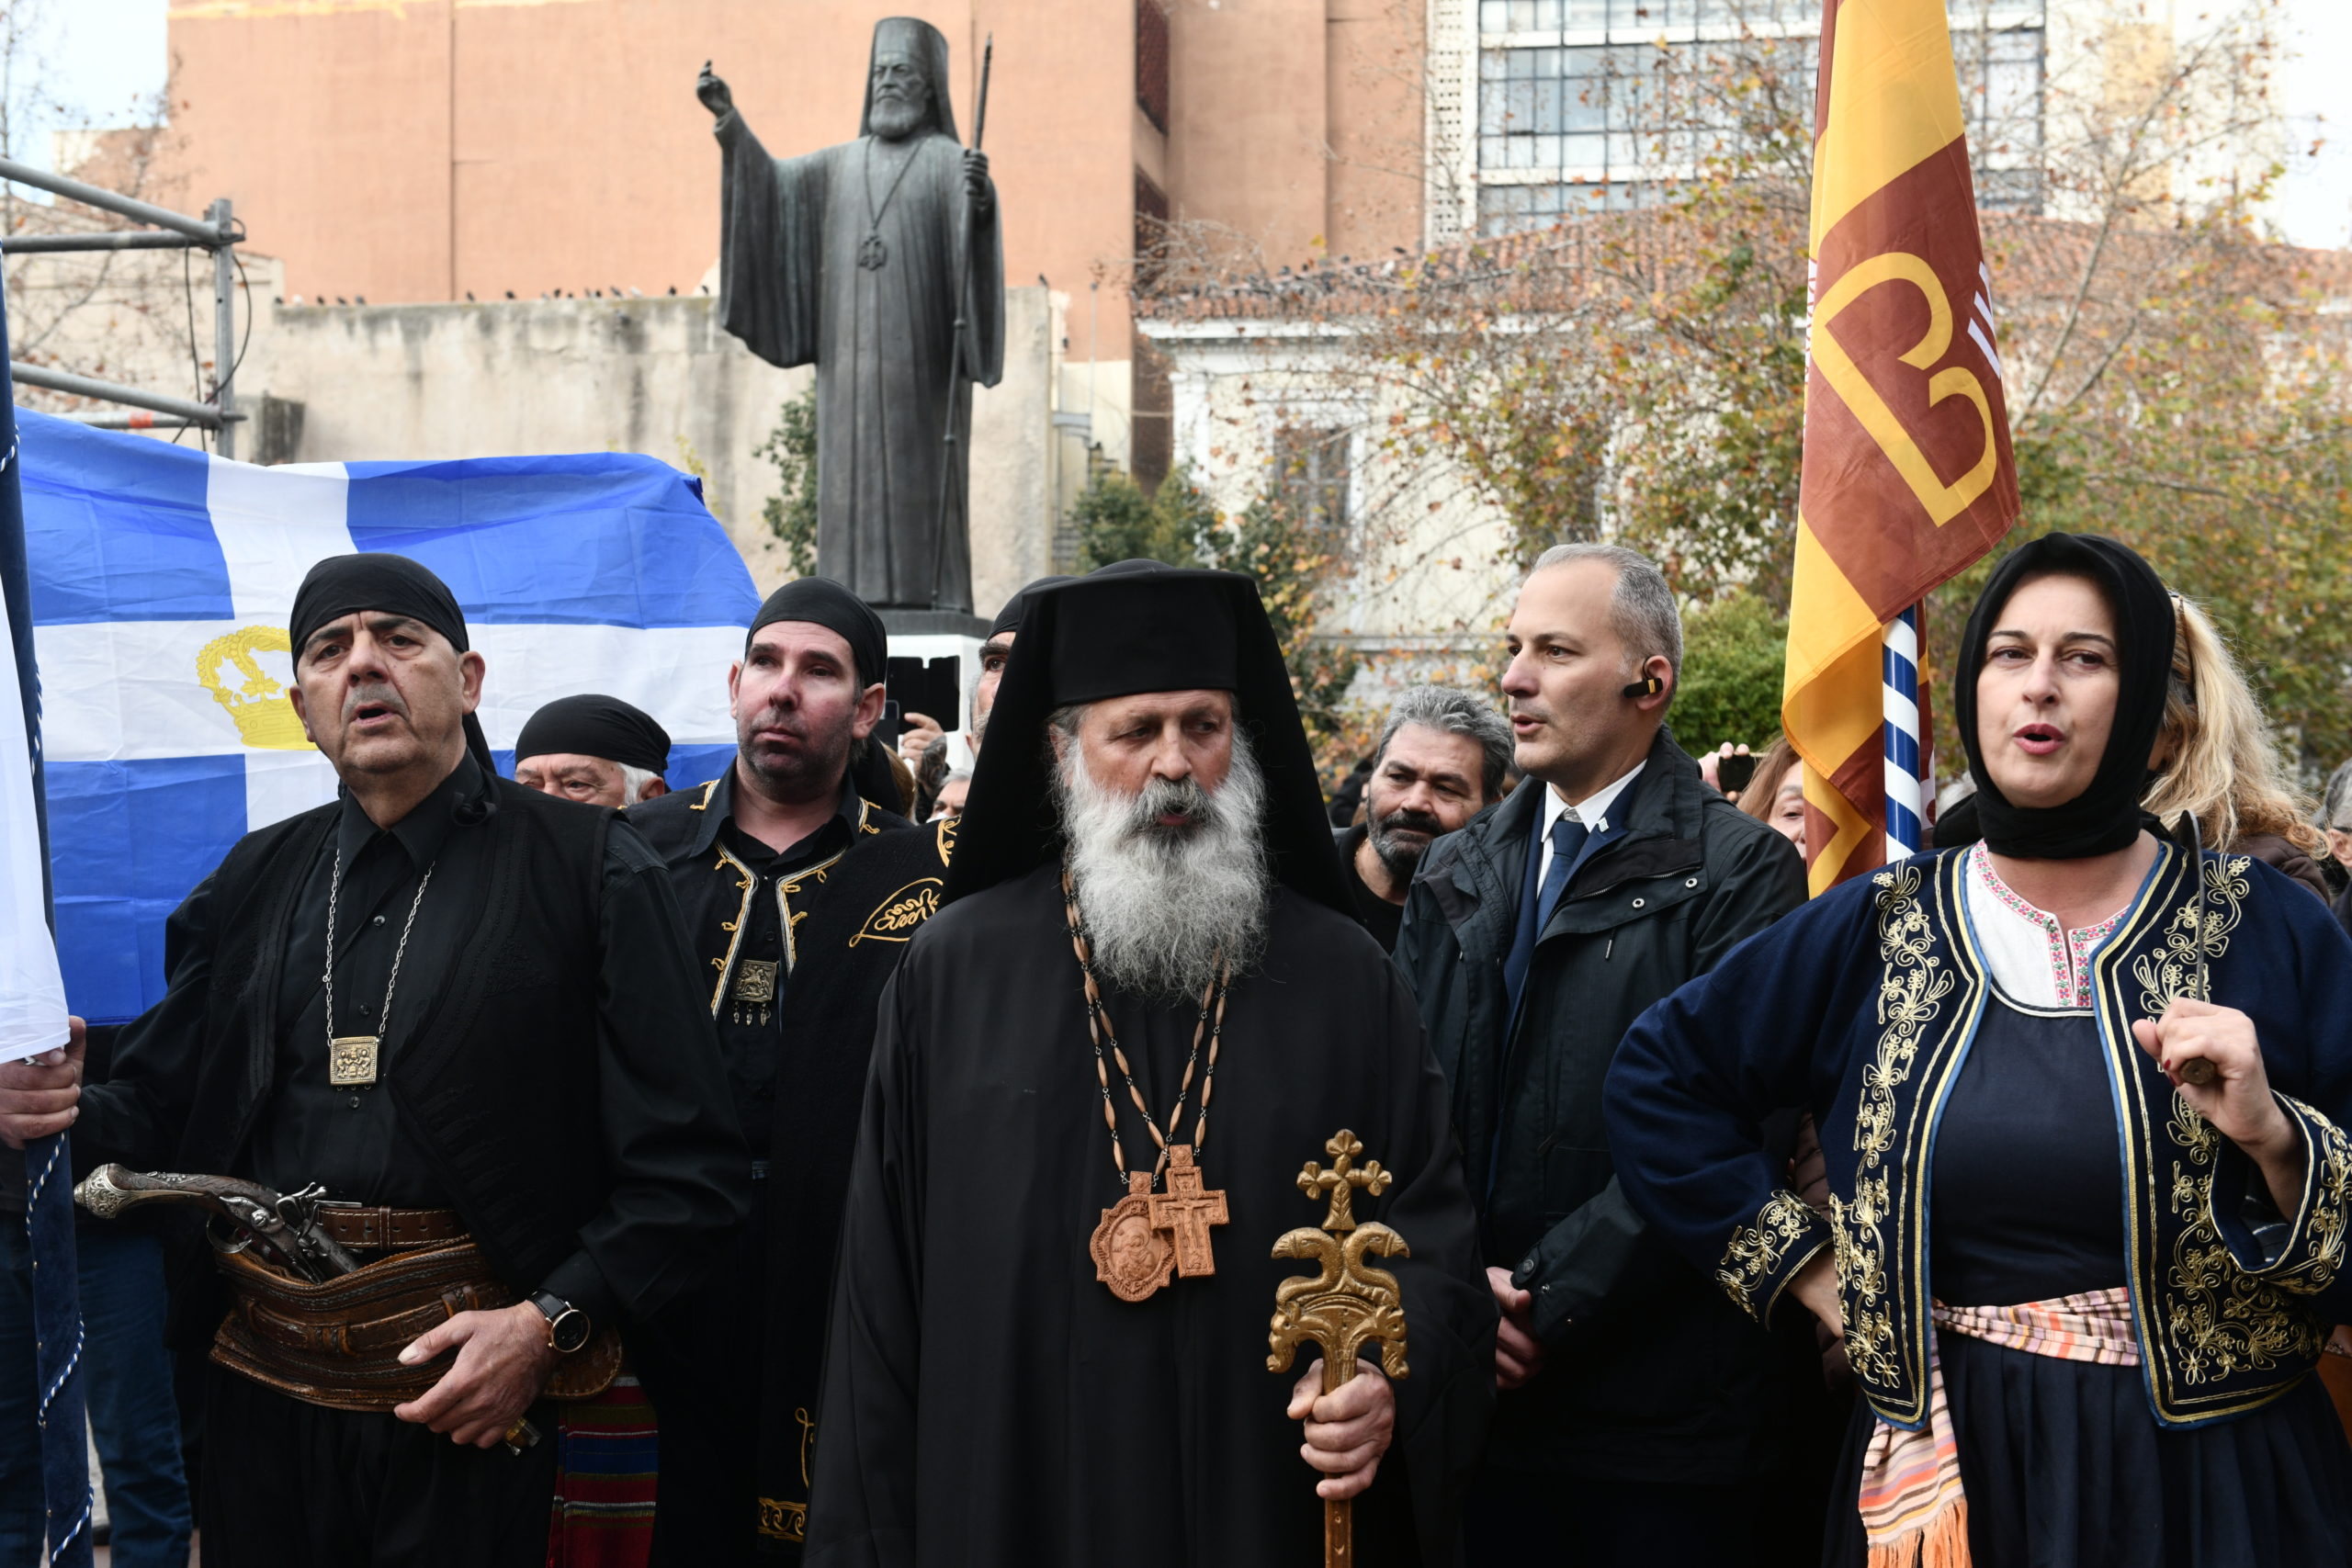 Κηδεία τέως βασιλιά: Ουρές πολιτών στη Μητρόπολη – Ακόμα και με παραδοσιακές στολές το τελευταίο αντίο (εικόνες)